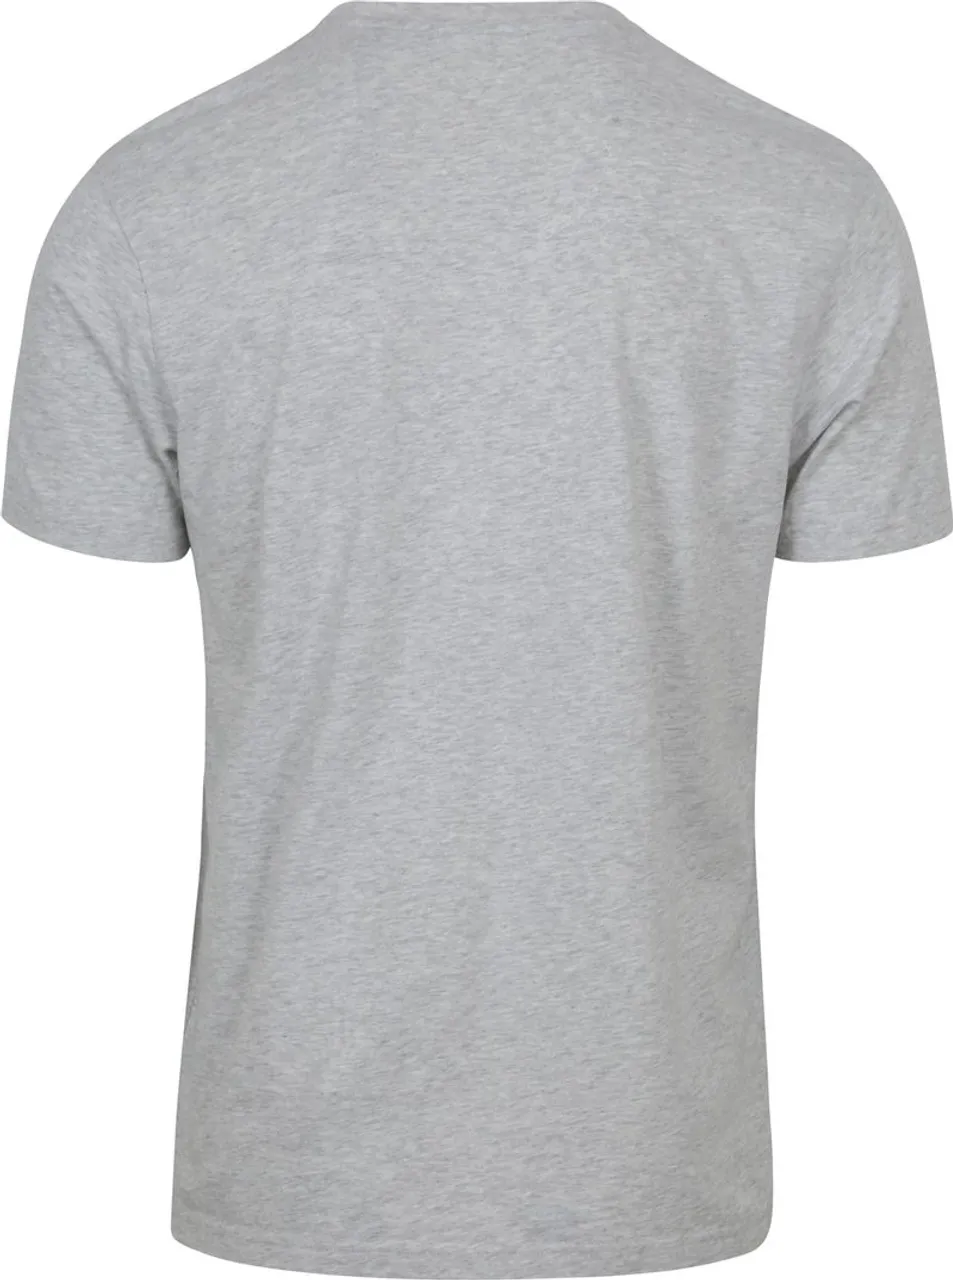 Colorful Standard T-shirt Grijs Melange